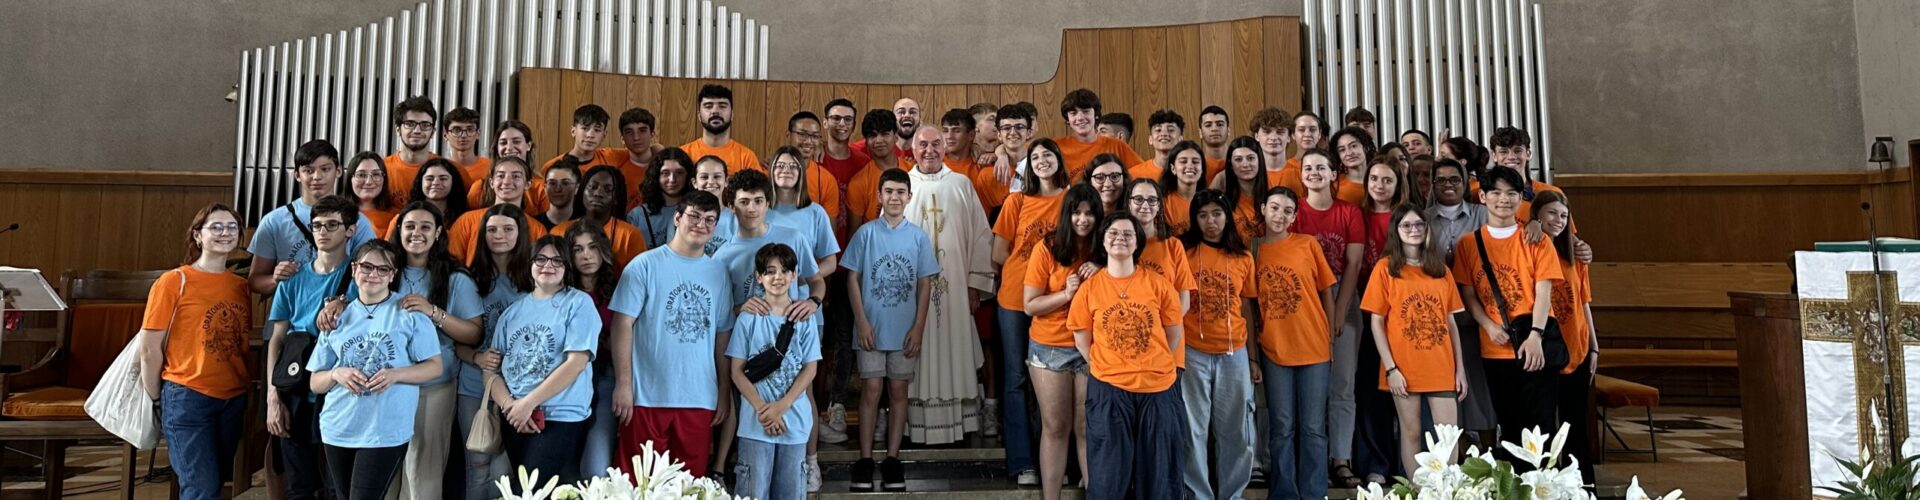 Il 13 luglio a Sant’Anna la Messa in suffragio di don Carlo Semeria